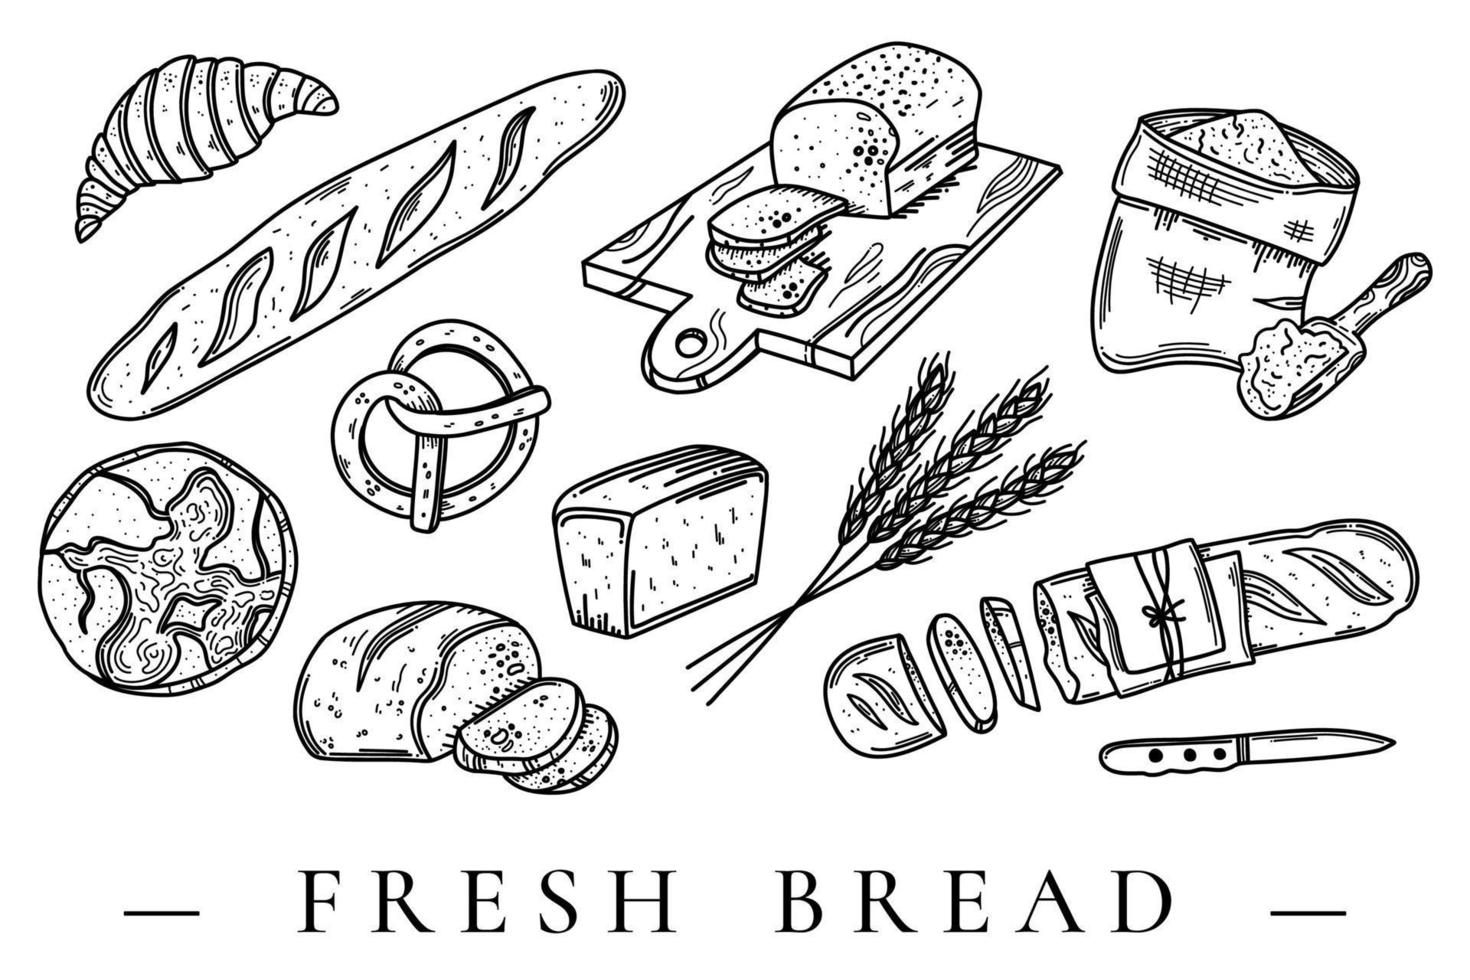 illustrazioni del set di doodle disegnate a mano di vettore del pane. collezione incisa di prodotti da forno per alimenti al glutine isolata su sfondo bianco.